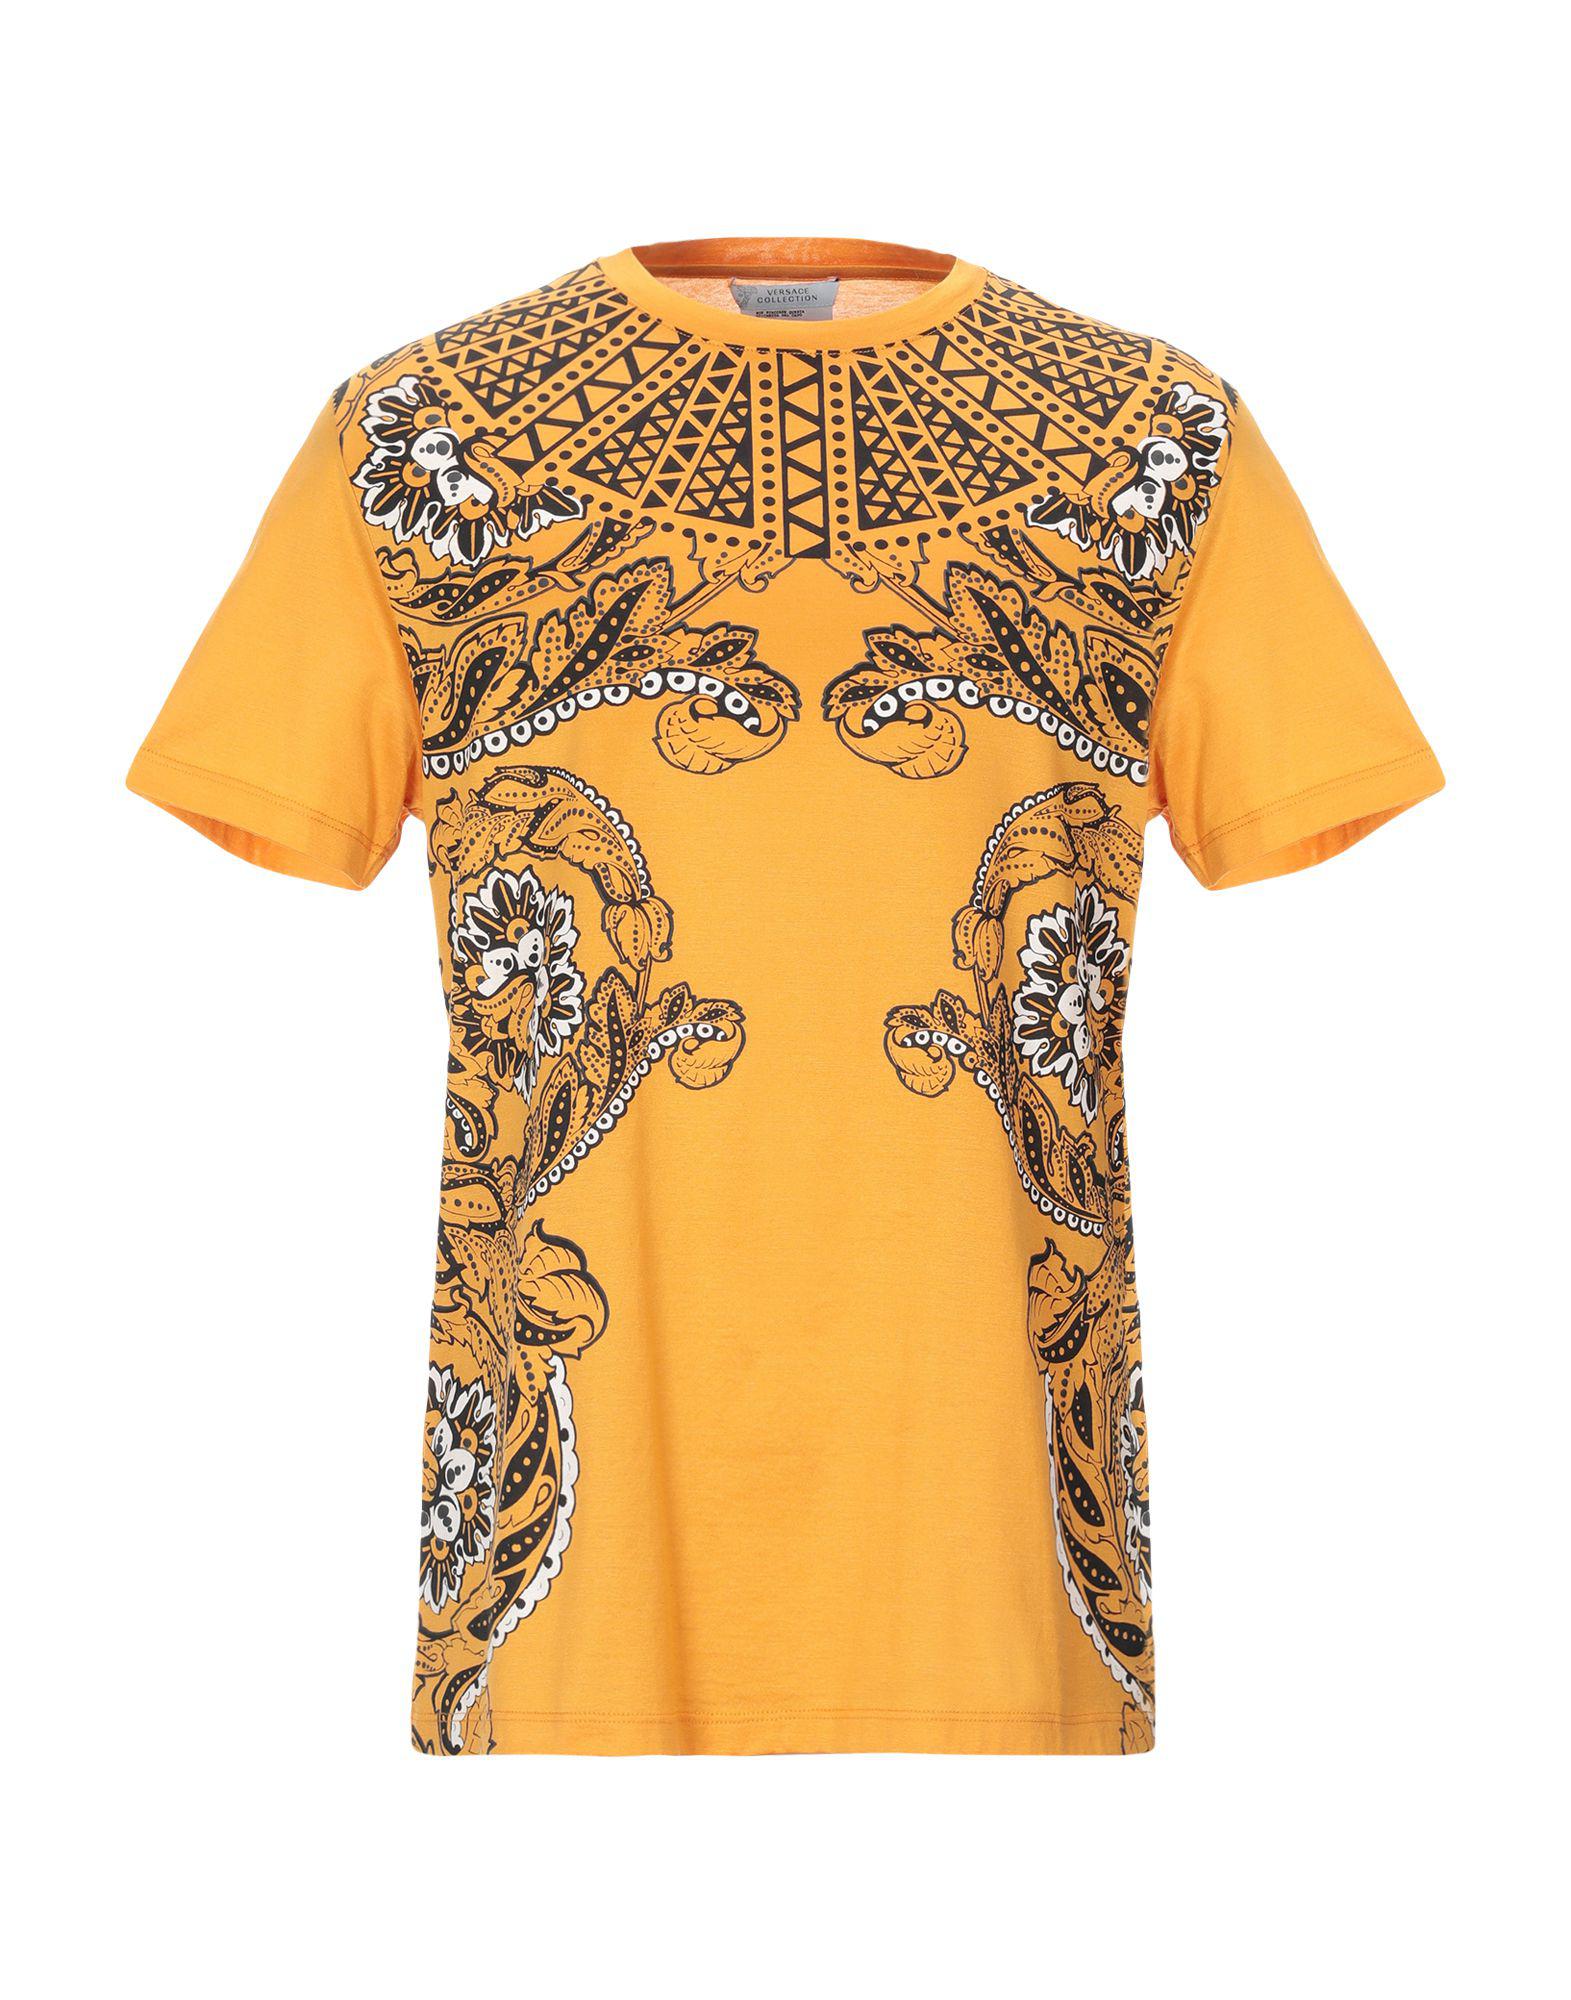 Versace T-shirt in Orange for Men - Lyst